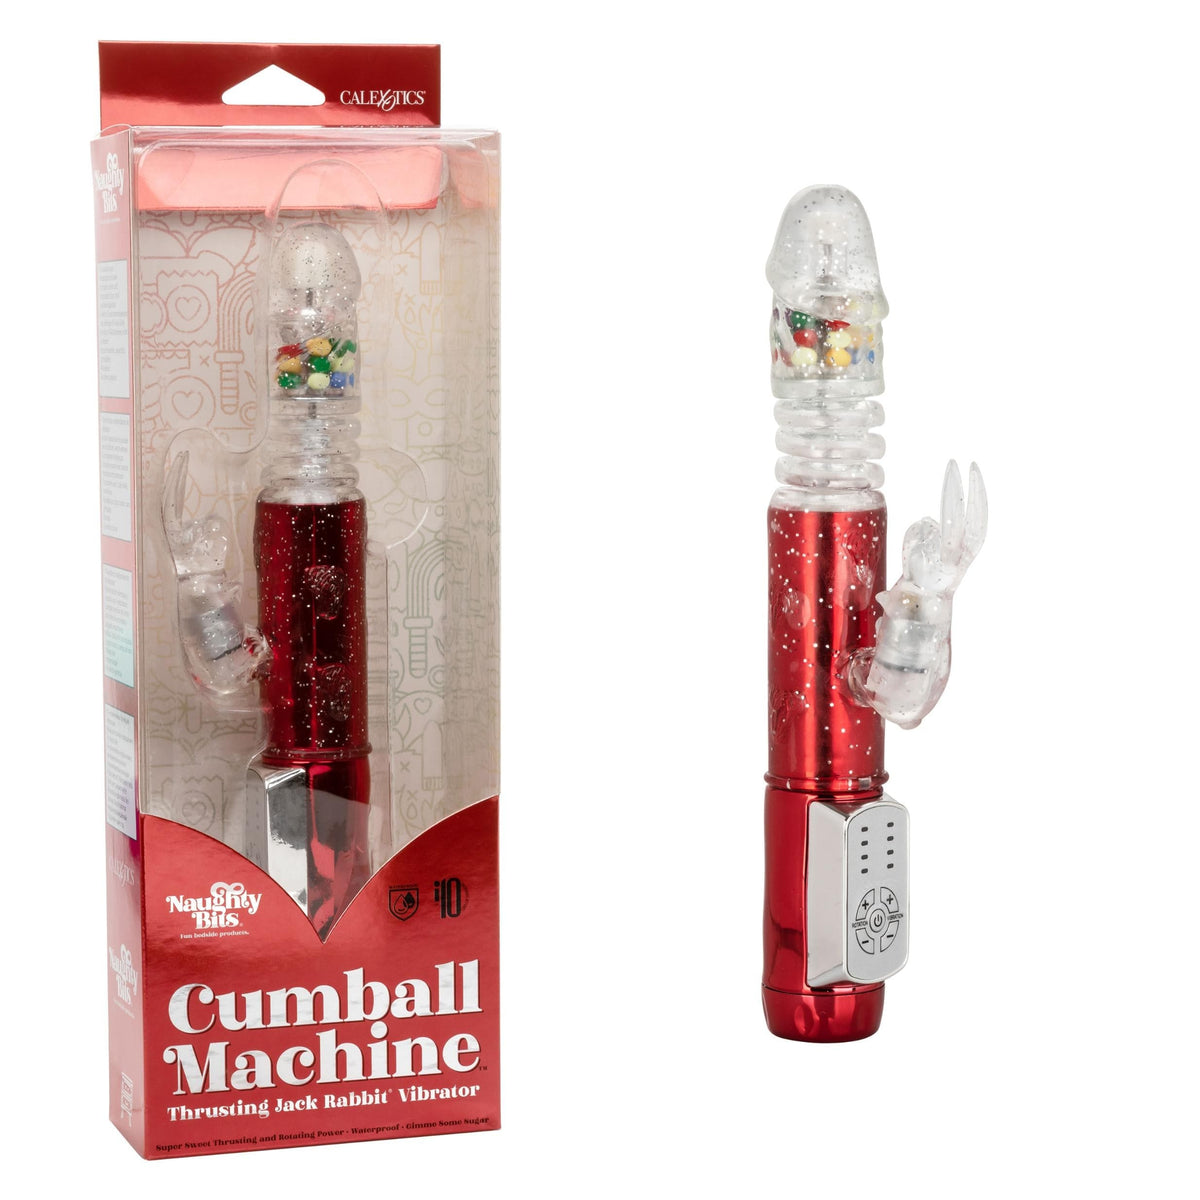 naughty bits cumball machine thrusting jack rabbit vibrator red